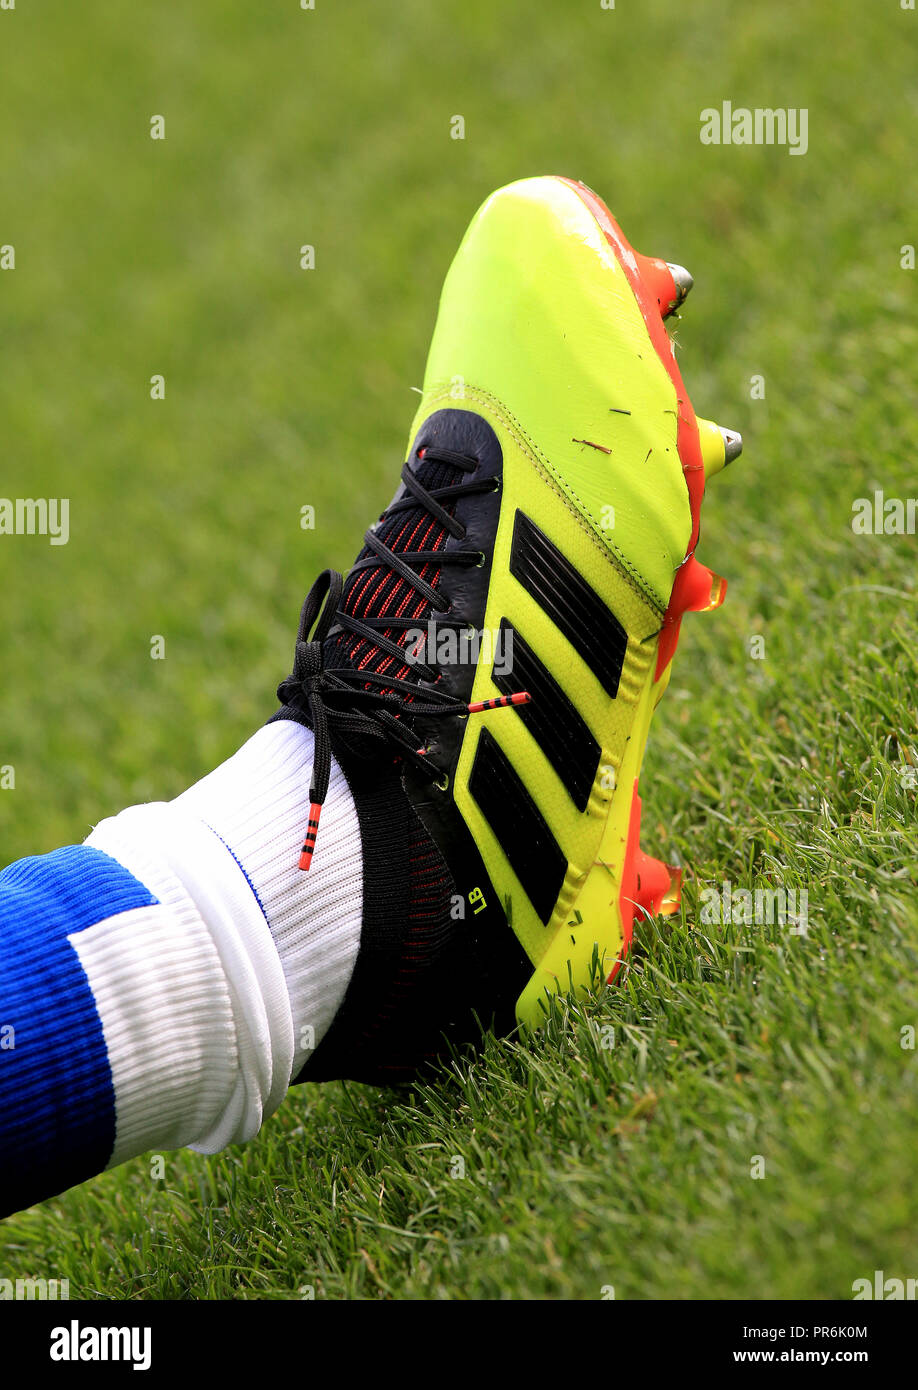 El Everton Leighton Baines' Adidas botas de fútbol durante el partido de  Liga Premier en Goodison Park, Liverpool. Asociación de la prensa de la  foto. Imagen Fecha: Sábado 29 de septiembre de